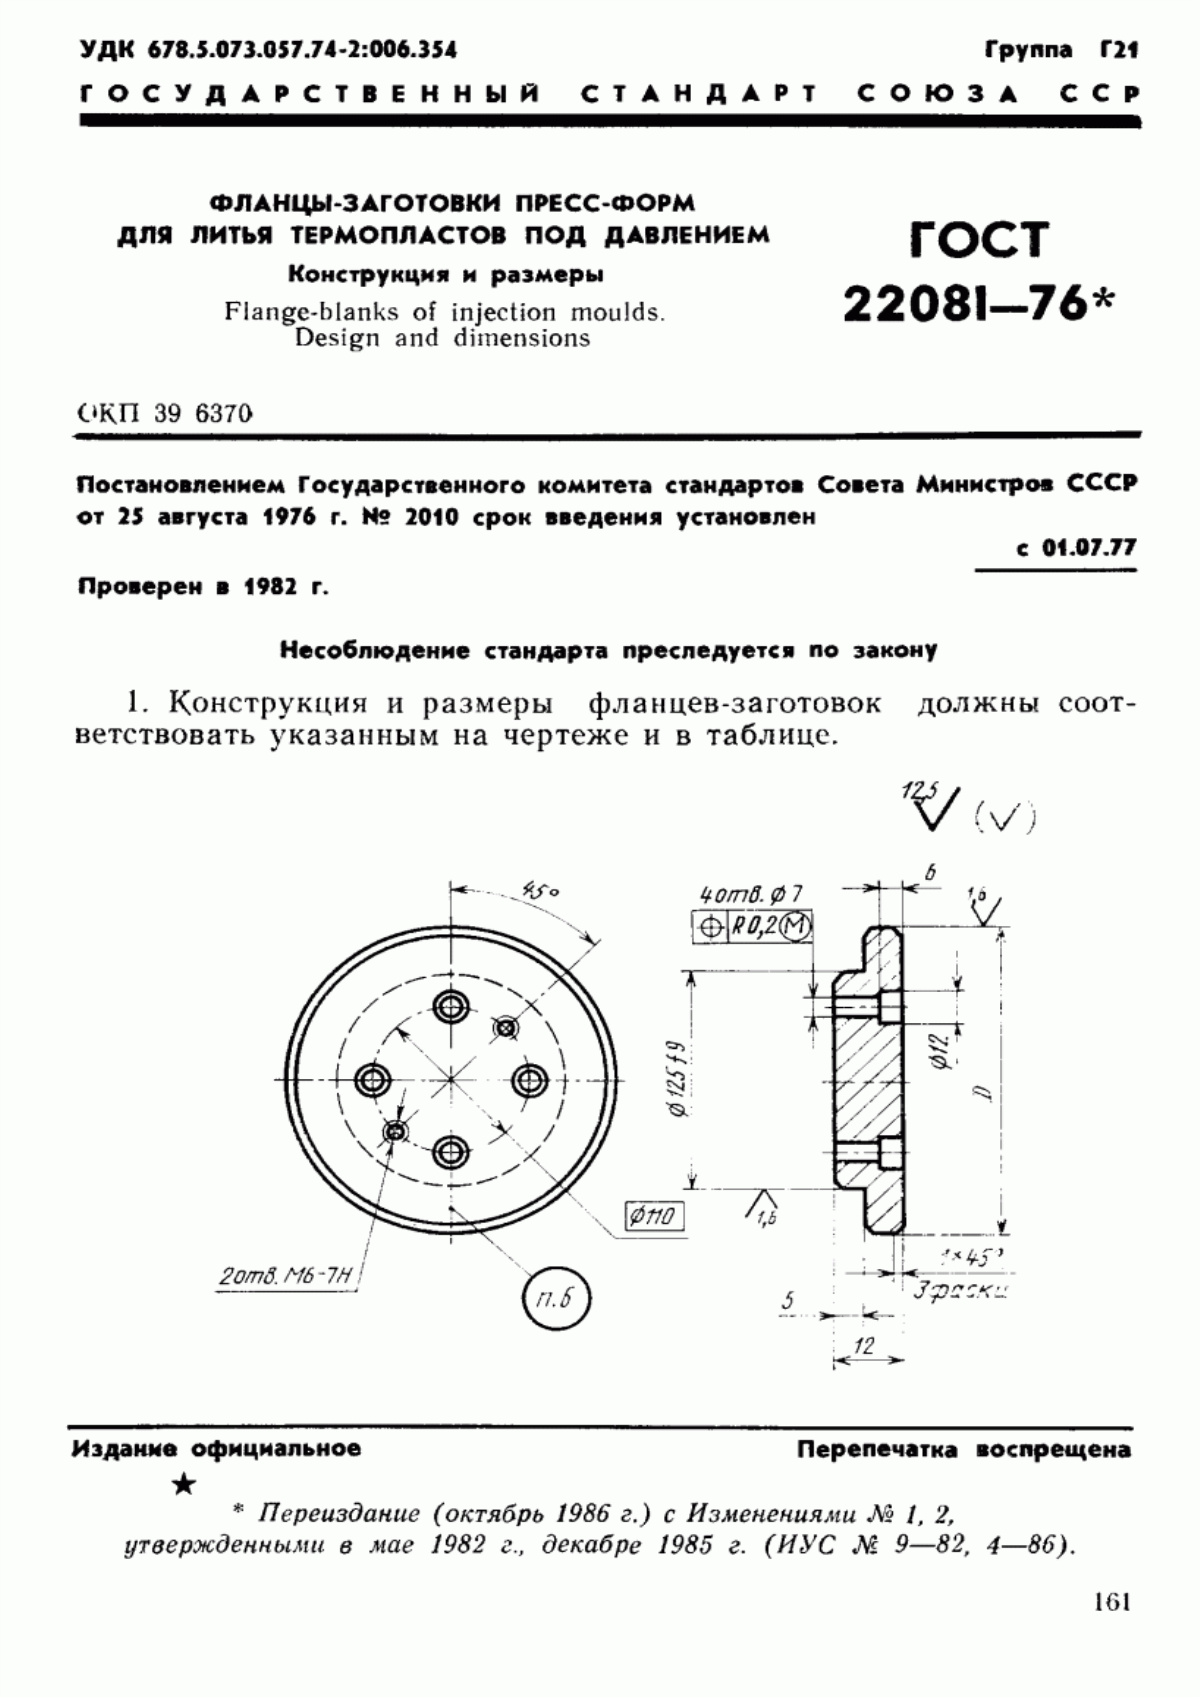 ГОСТ 22081-76 Фланцы-заготовки пресс-форм для литья термопластов под давлением. Конструкция и размеры